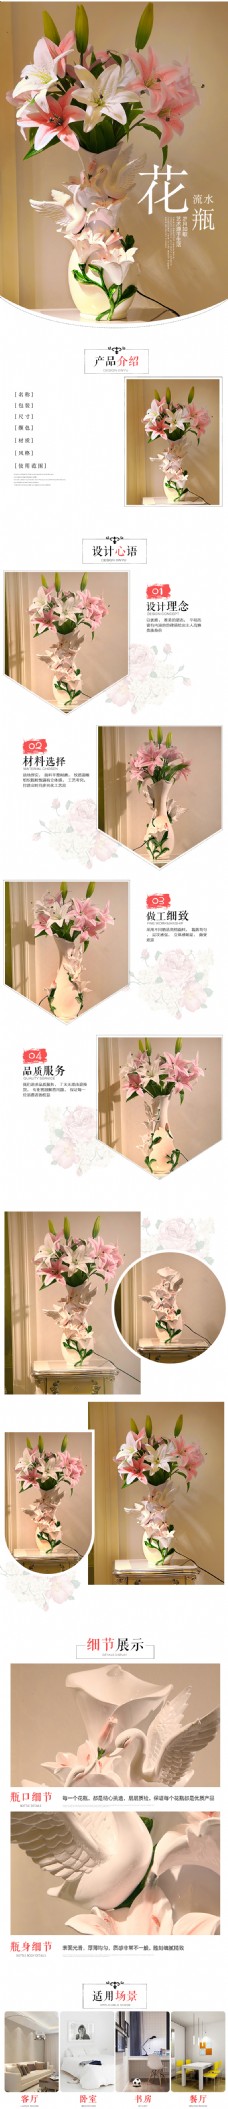 植物花瓶详情页